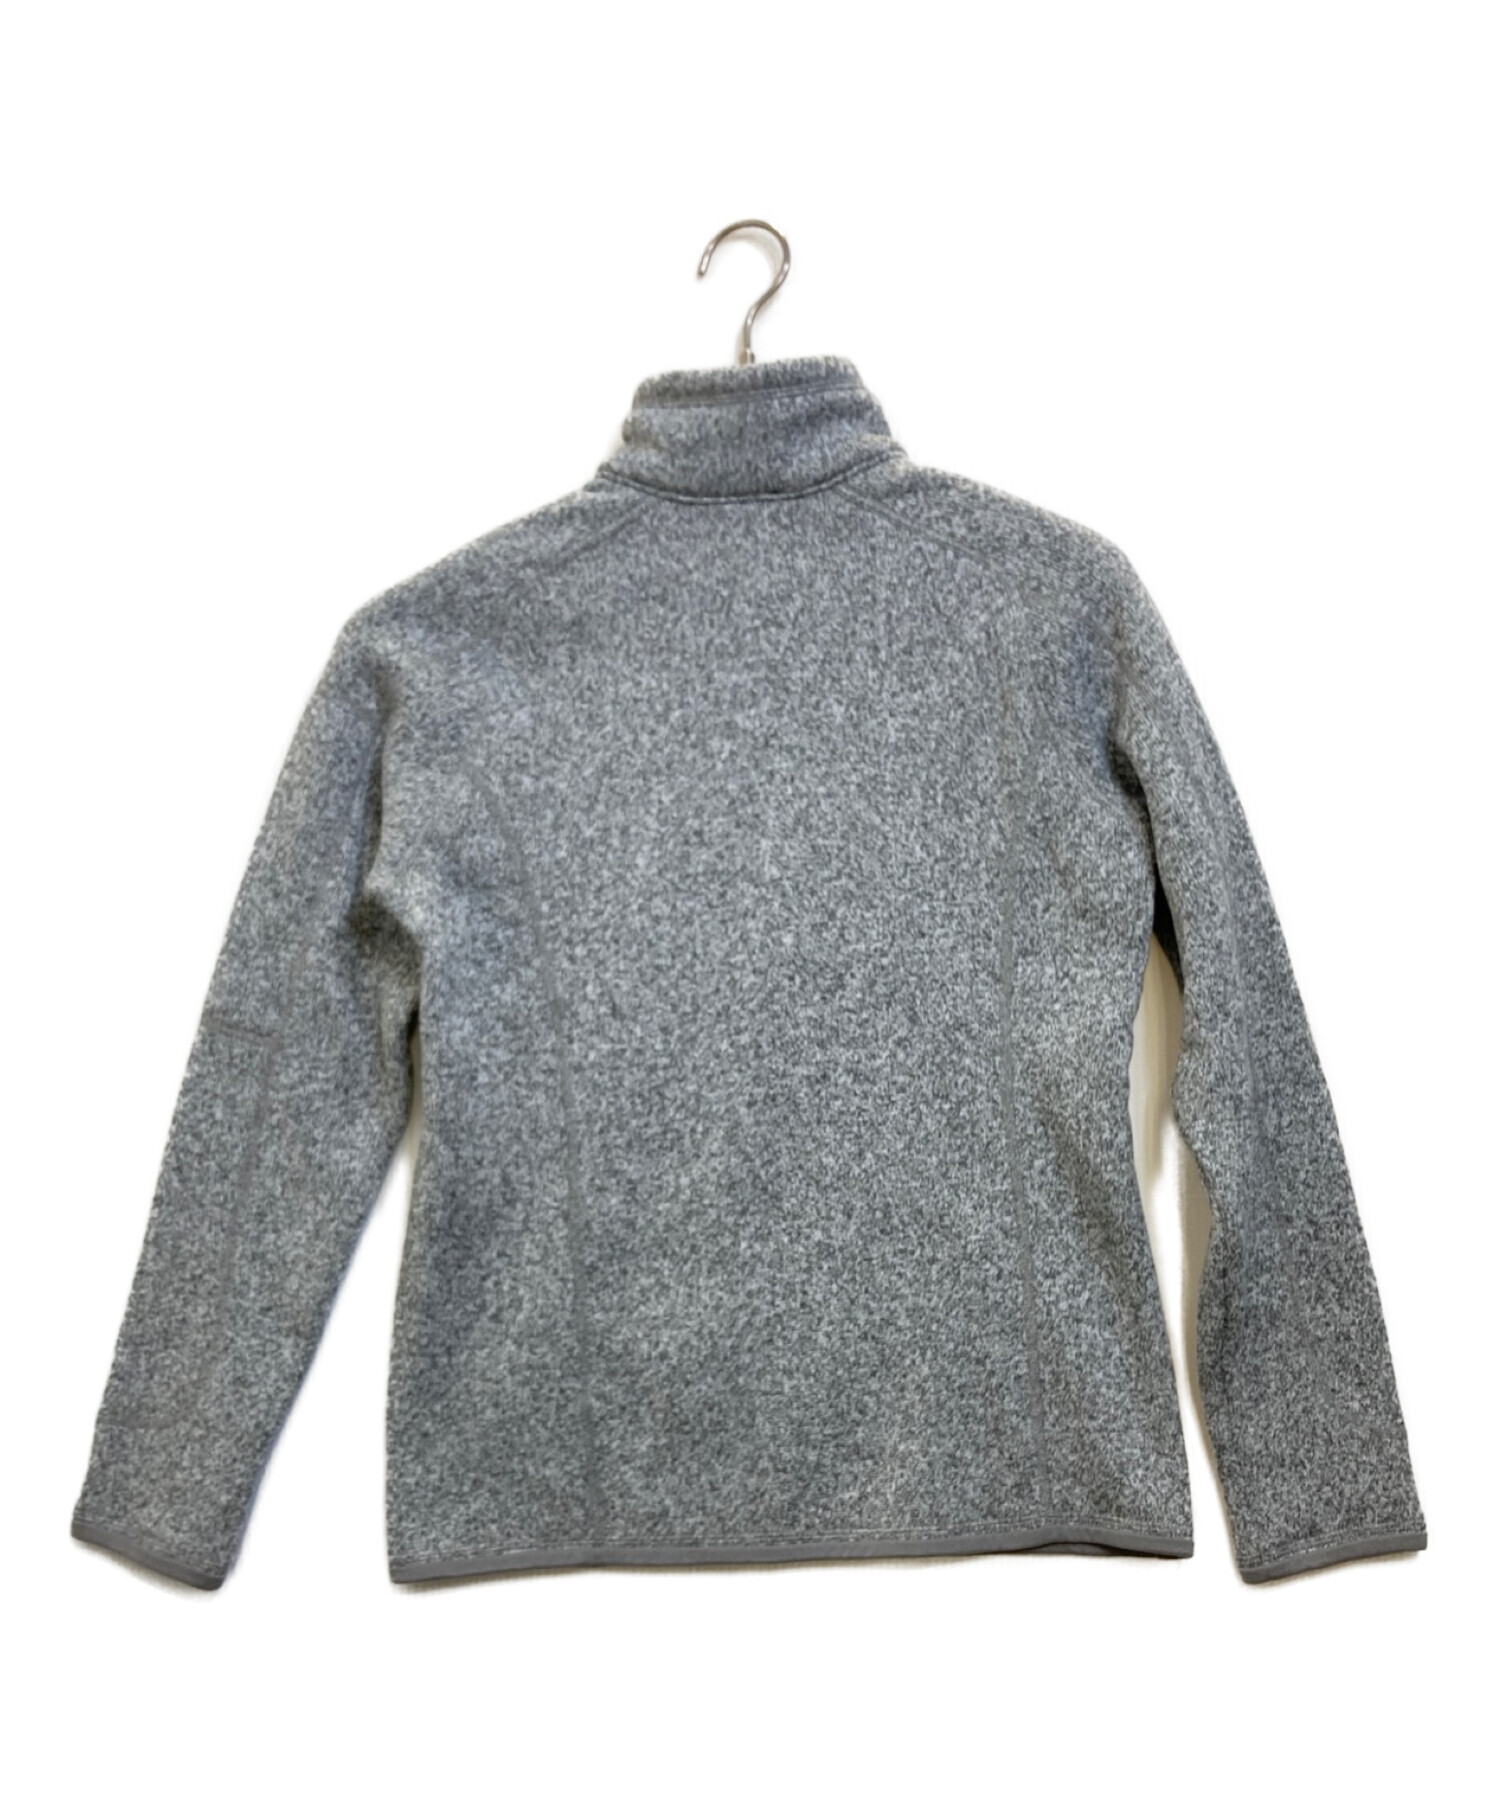 Patagonia (パタゴニア) Better Sweater グレー サイズ:S